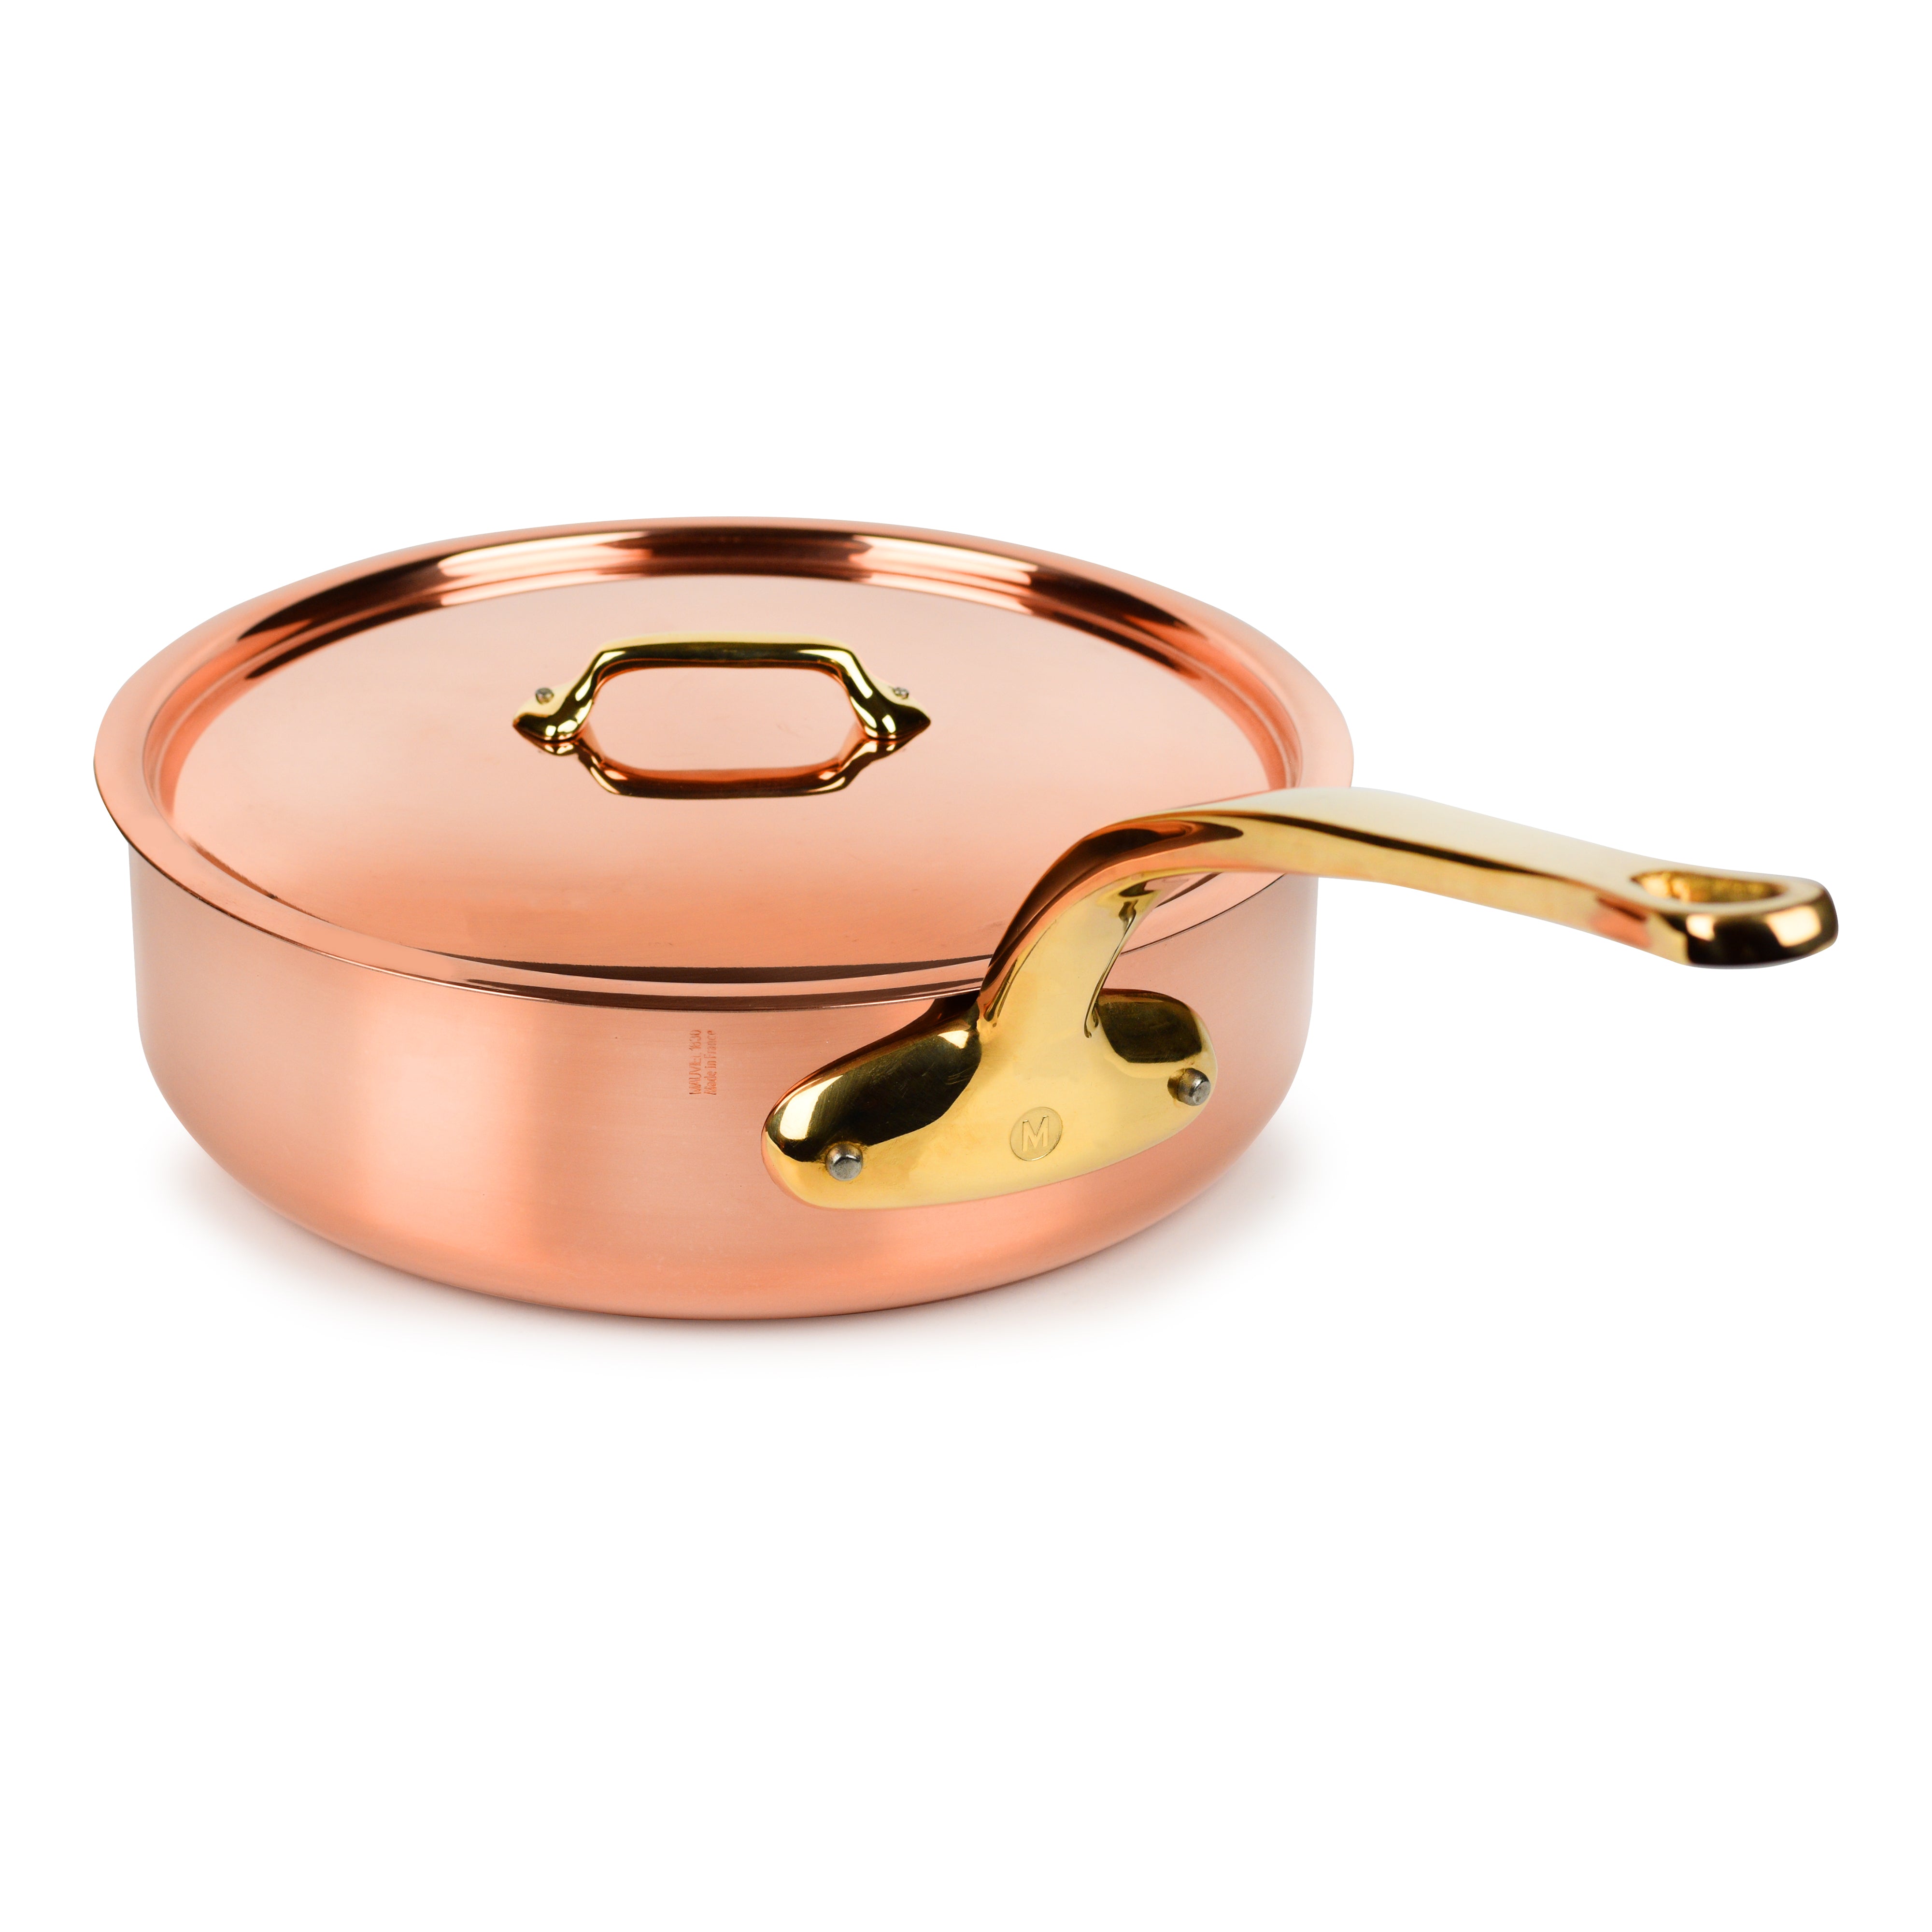 Mauviel M200ci 6-Quart Copper Saute Pan